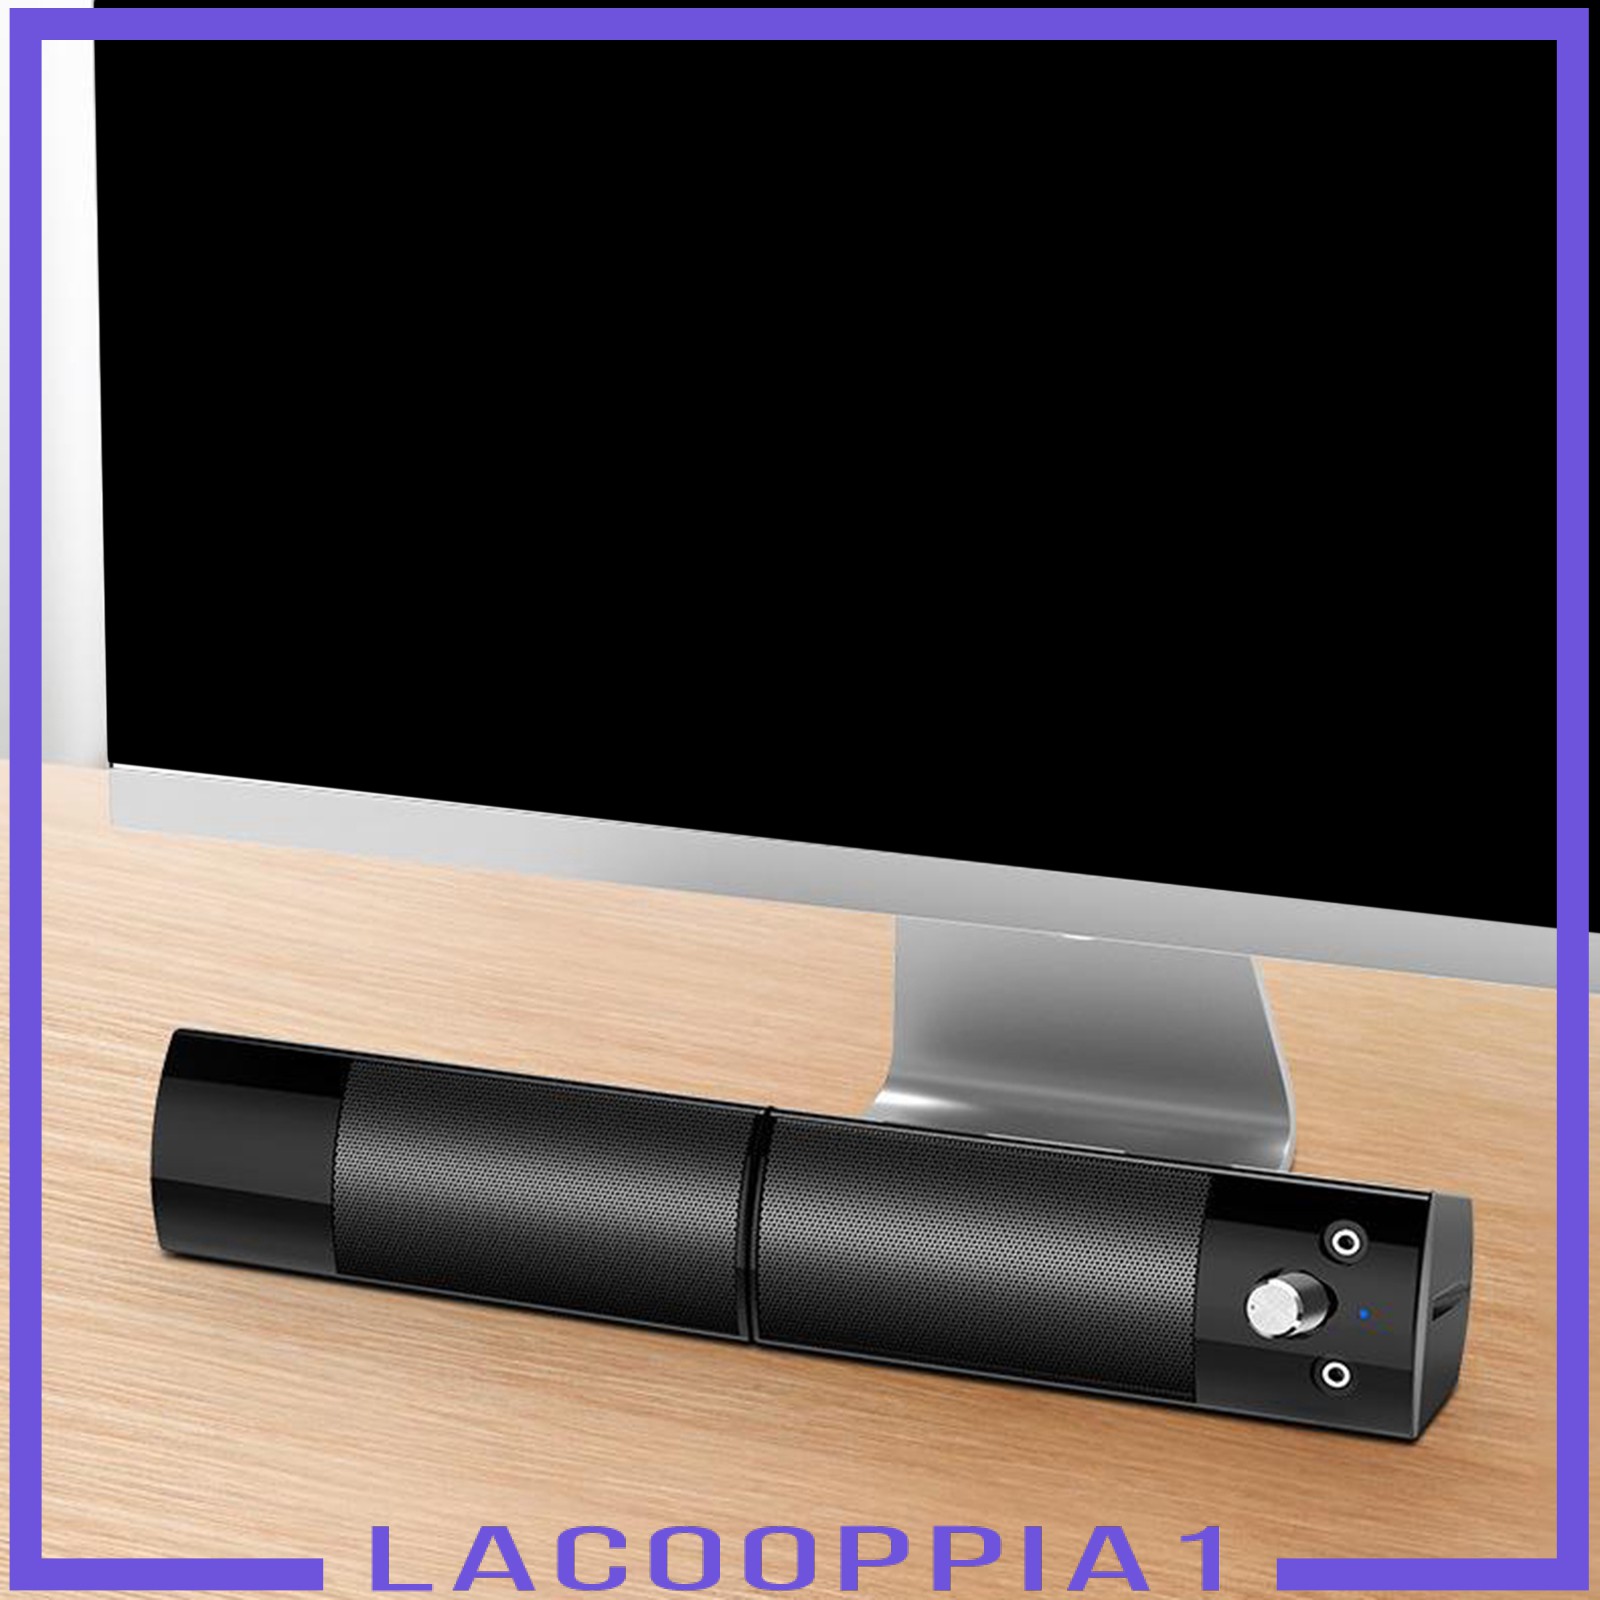 Loa Bluetooth Lapopopia1 Âm Thanh Siêu Trầm Và Phụ Kiện